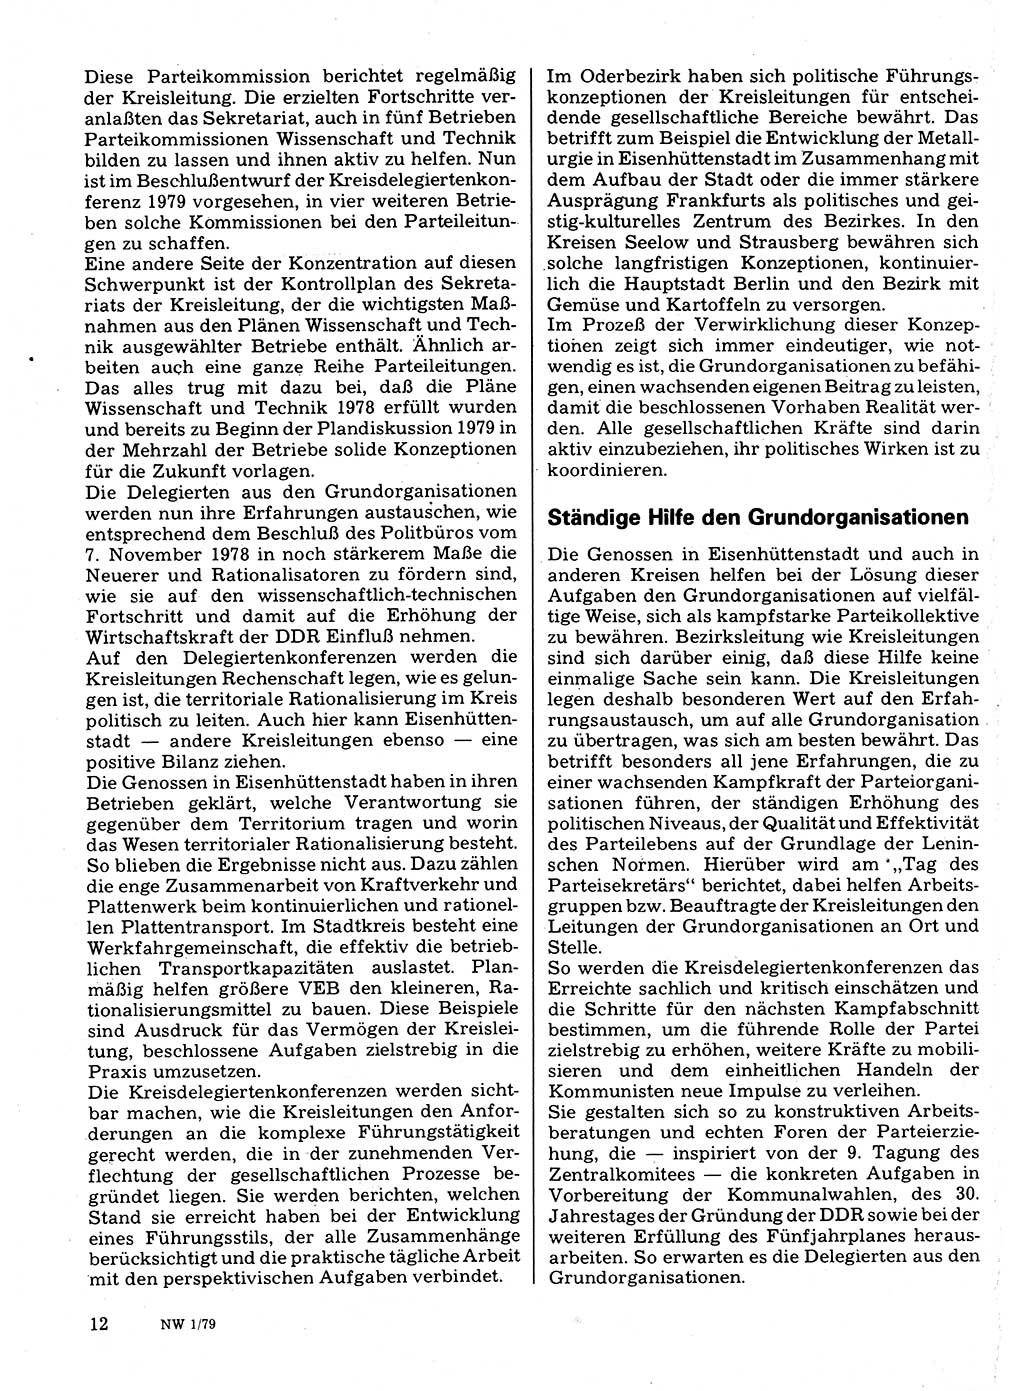 Neuer Weg (NW), Organ des Zentralkomitees (ZK) der SED (Sozialistische Einheitspartei Deutschlands) für Fragen des Parteilebens, 34. Jahrgang [Deutsche Demokratische Republik (DDR)] 1979, Seite 12 (NW ZK SED DDR 1979, S. 12)